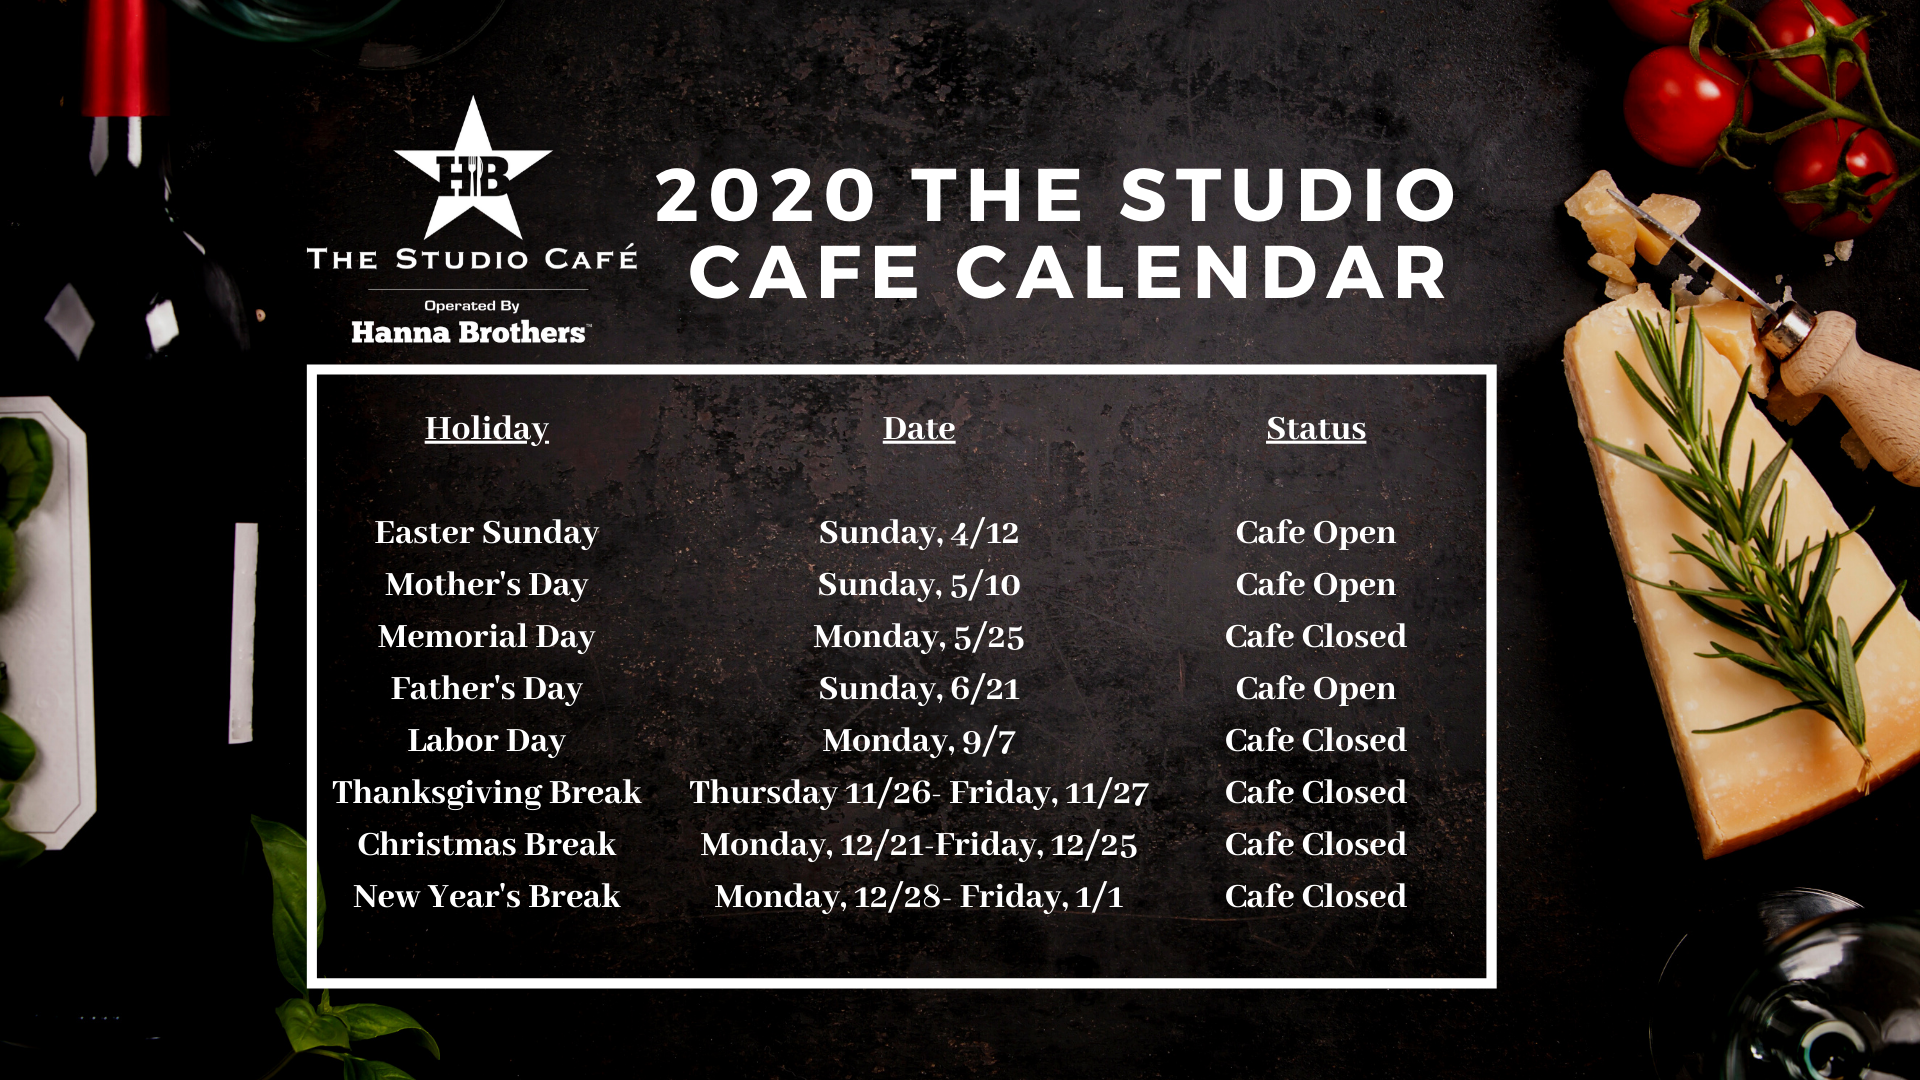 http://hbstudiocafe.com/wp-content/uploads/2020/02/the-studio-cafe-calendar-14.png